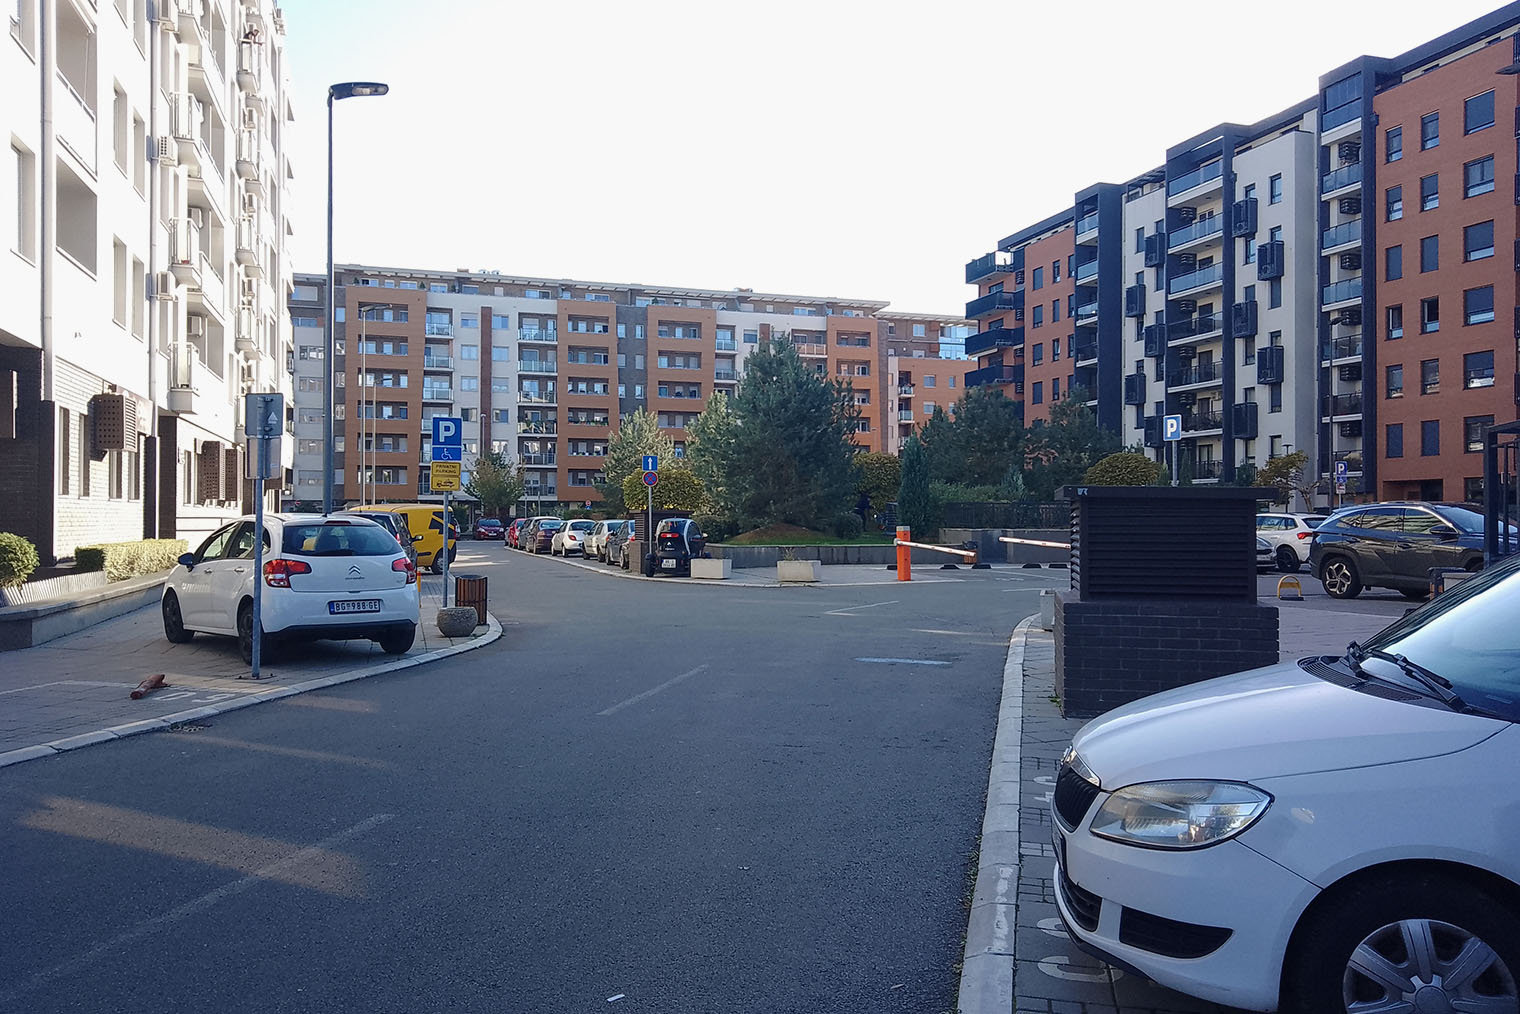 Некоторые кварталы Нового Белграда застроены новым жильем. Есть бюджетные варианты и элитные жилые комплексы